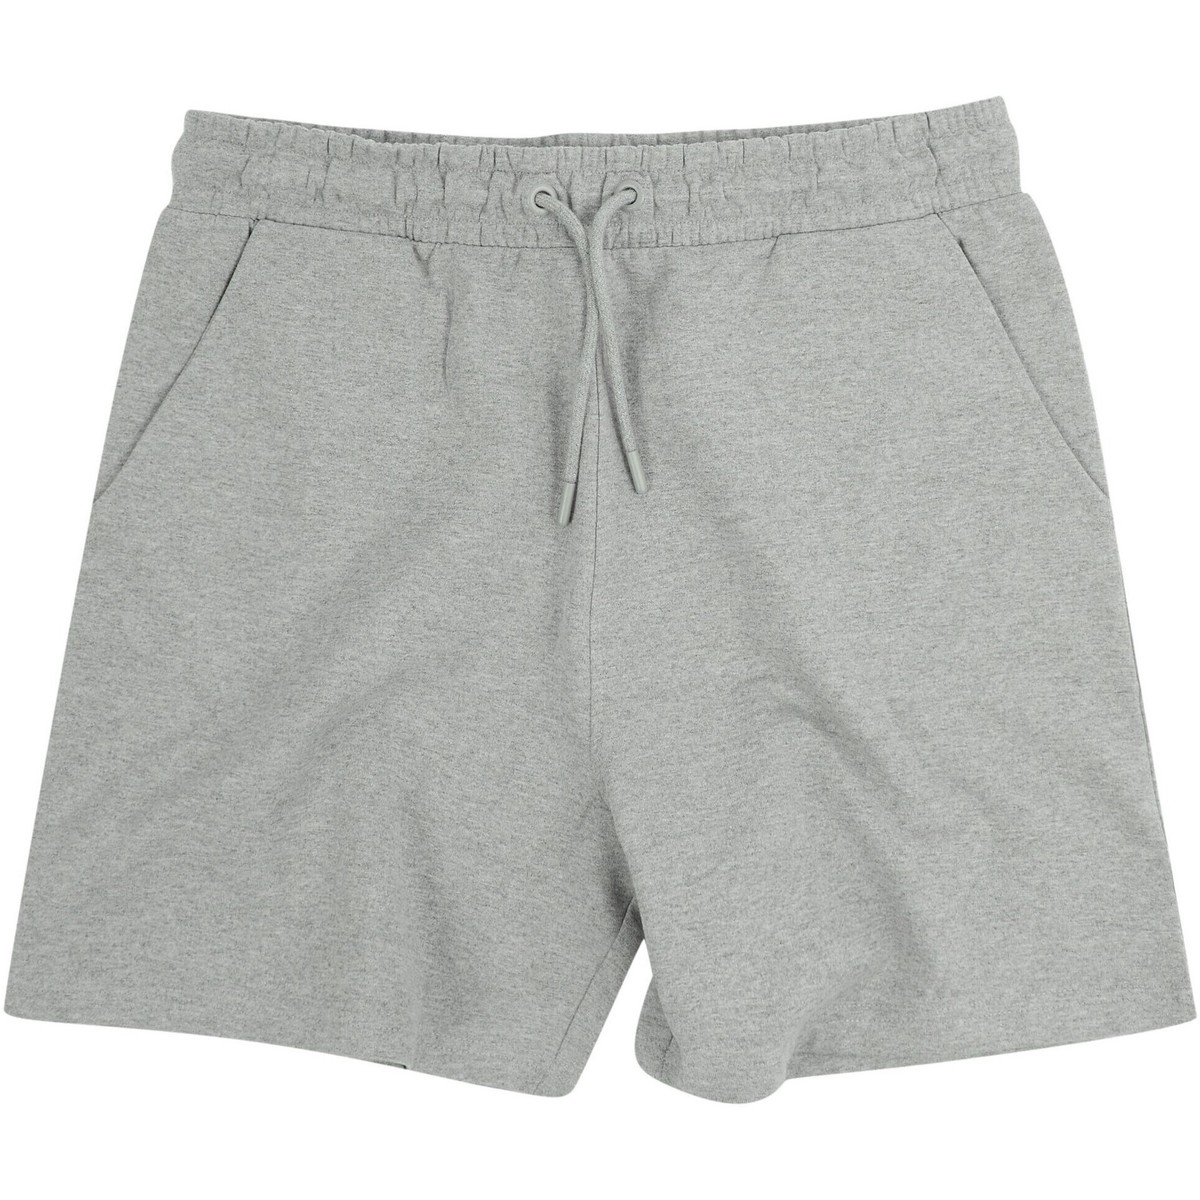 Abbigliamento Shorts / Bermuda Skinni Fit Fashion Grigio